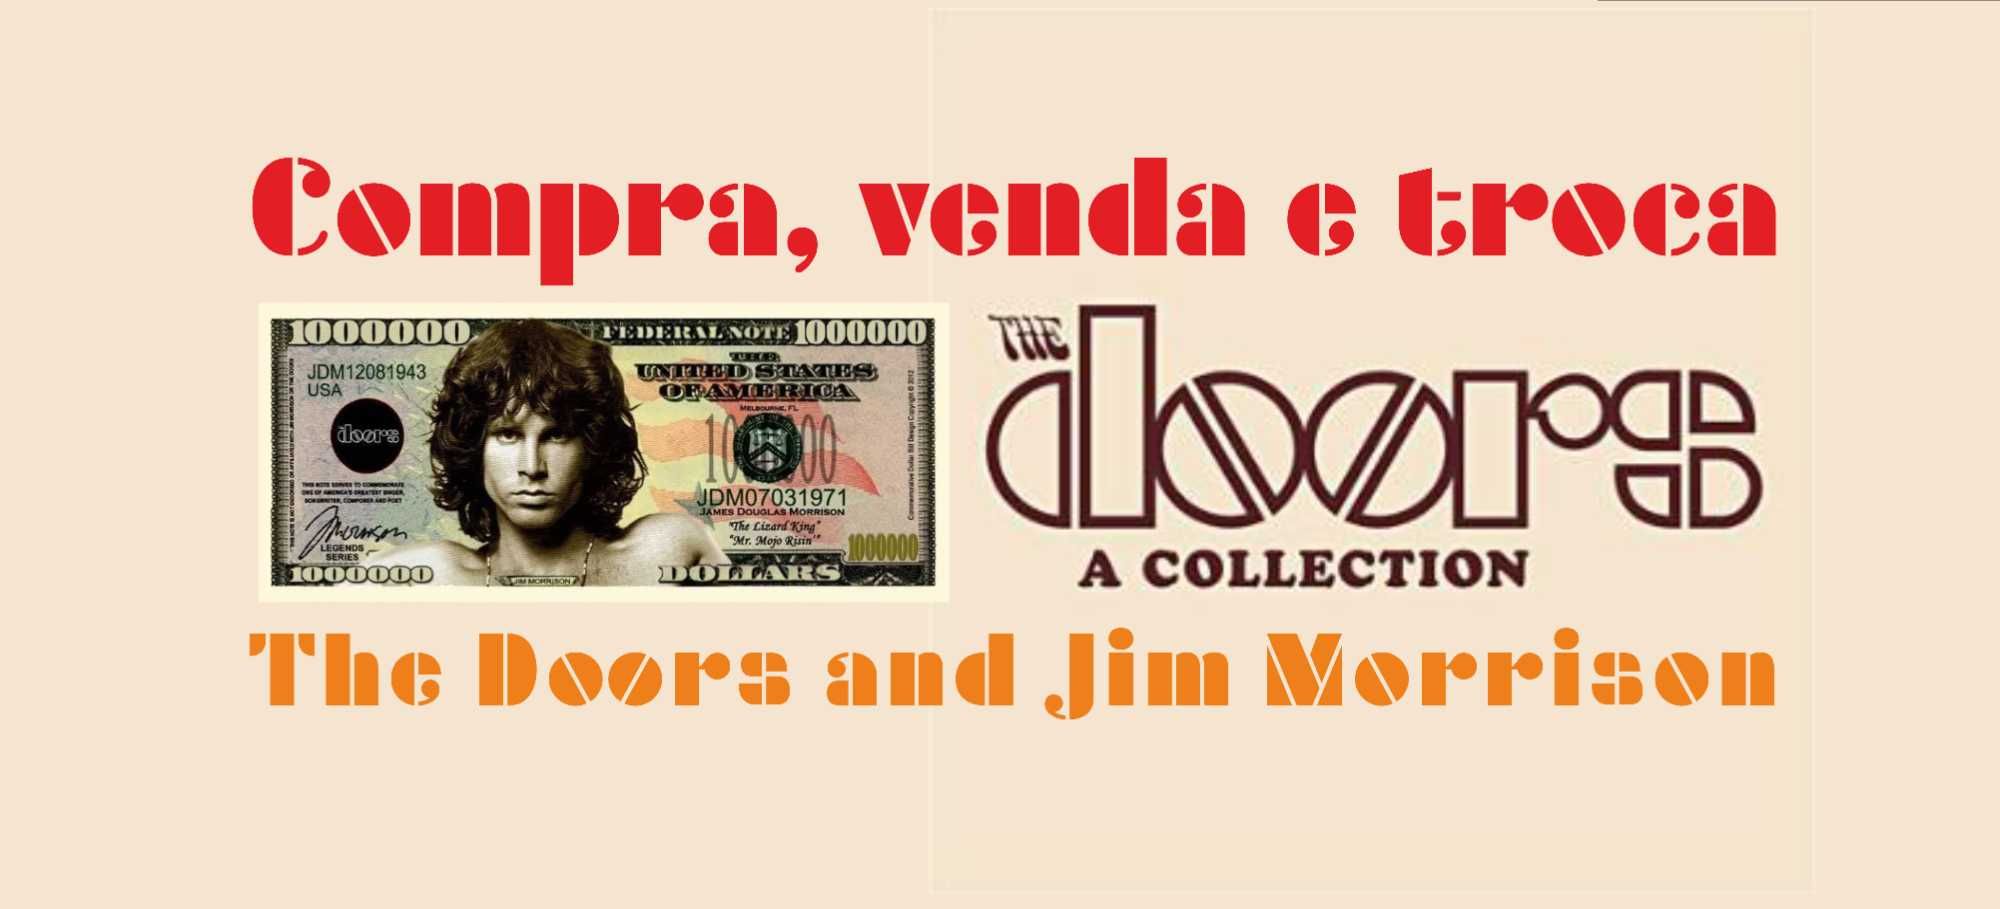 Venda | Compra | Troca - | The Doors e Jim Morrison |